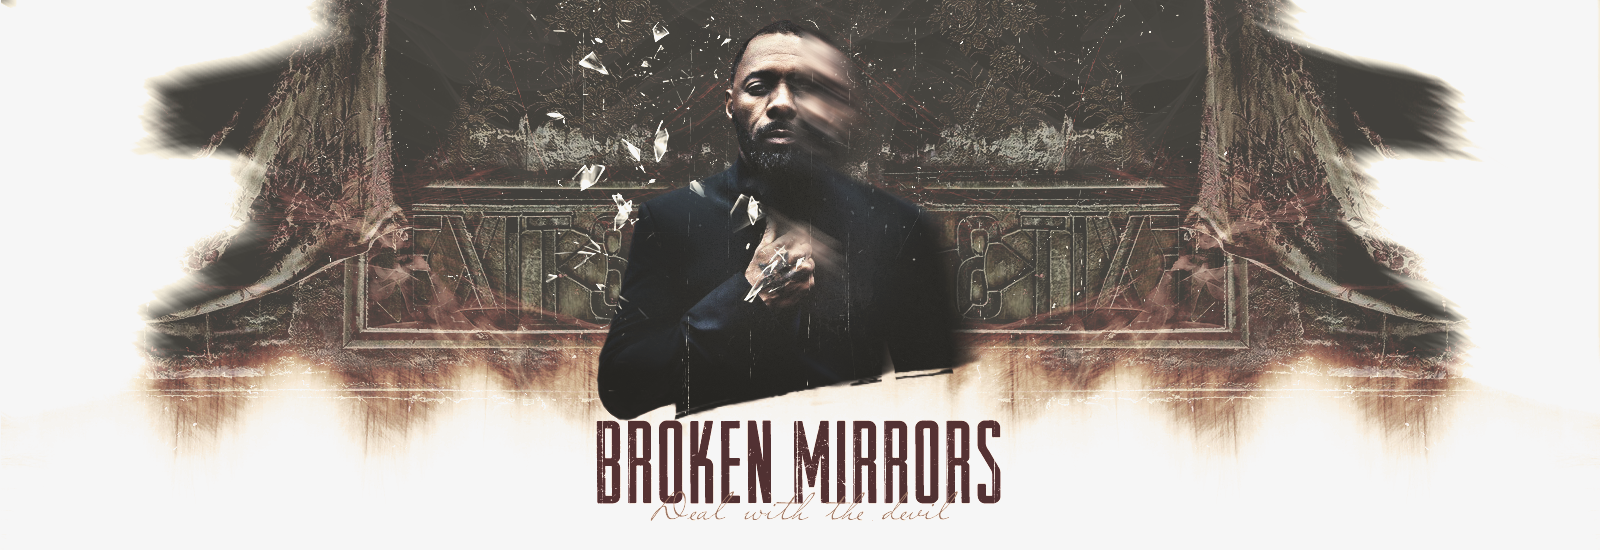 Broken Mirrors ₪ Fantastique horreur 15071510172218526513445753